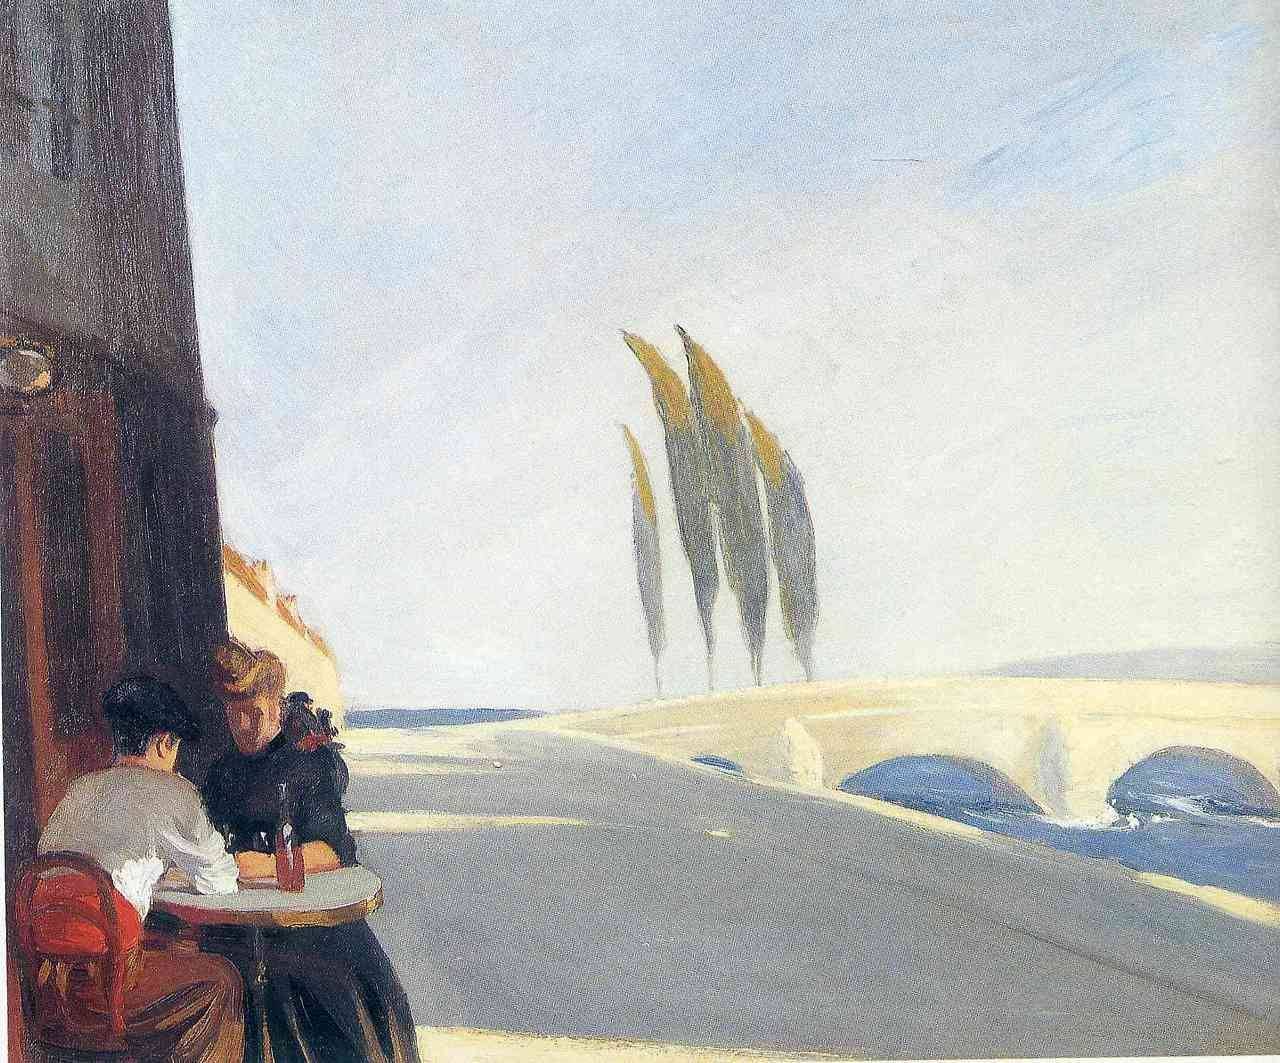 Bistroul (Magazinul de vin) by Edward Hopper - 1909 